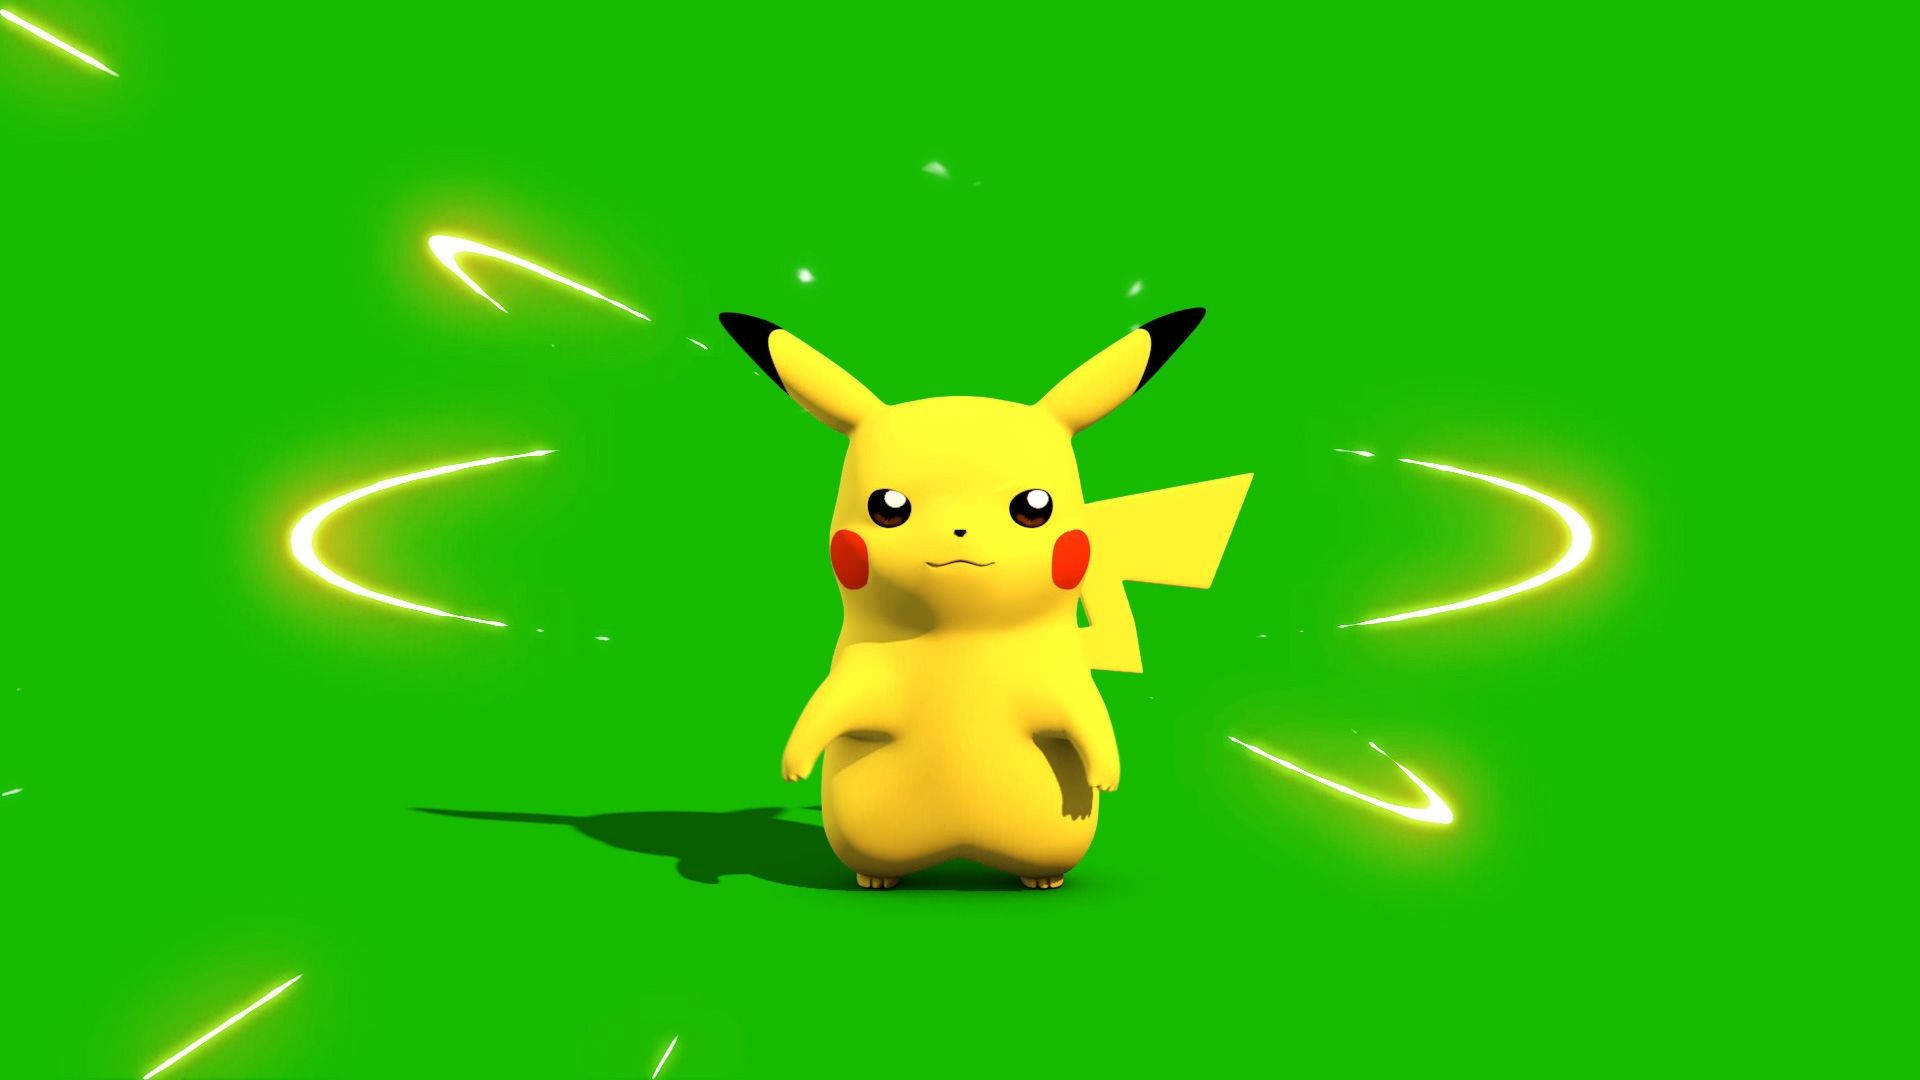 Pikachu 3d Pokémon Digital Model Background